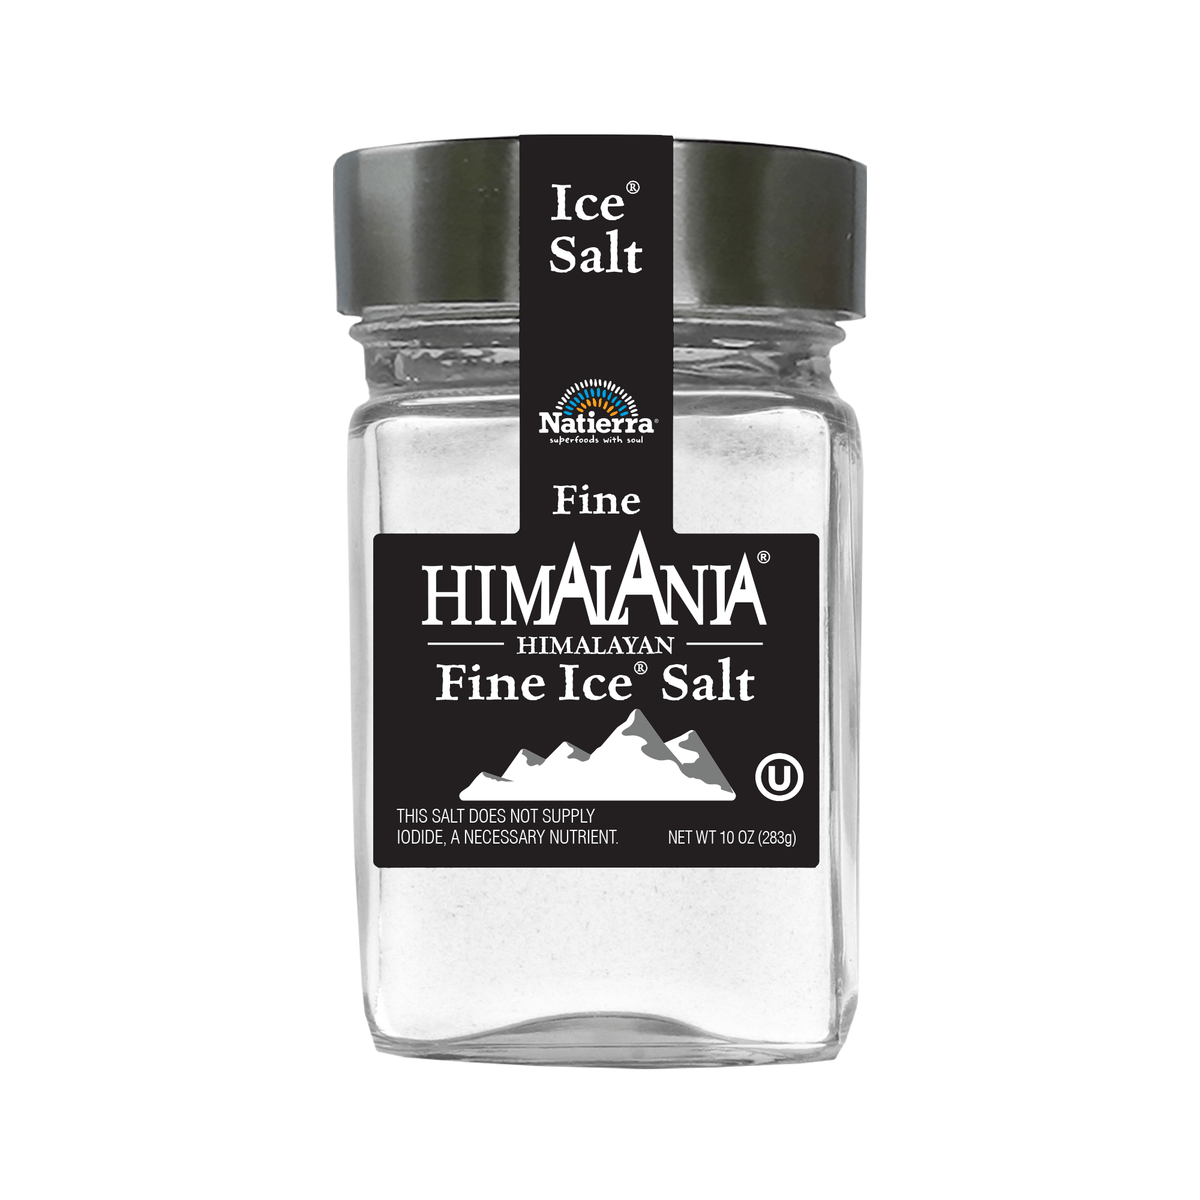 Natierra Himalania Fine Ice Salt 10 oz jar